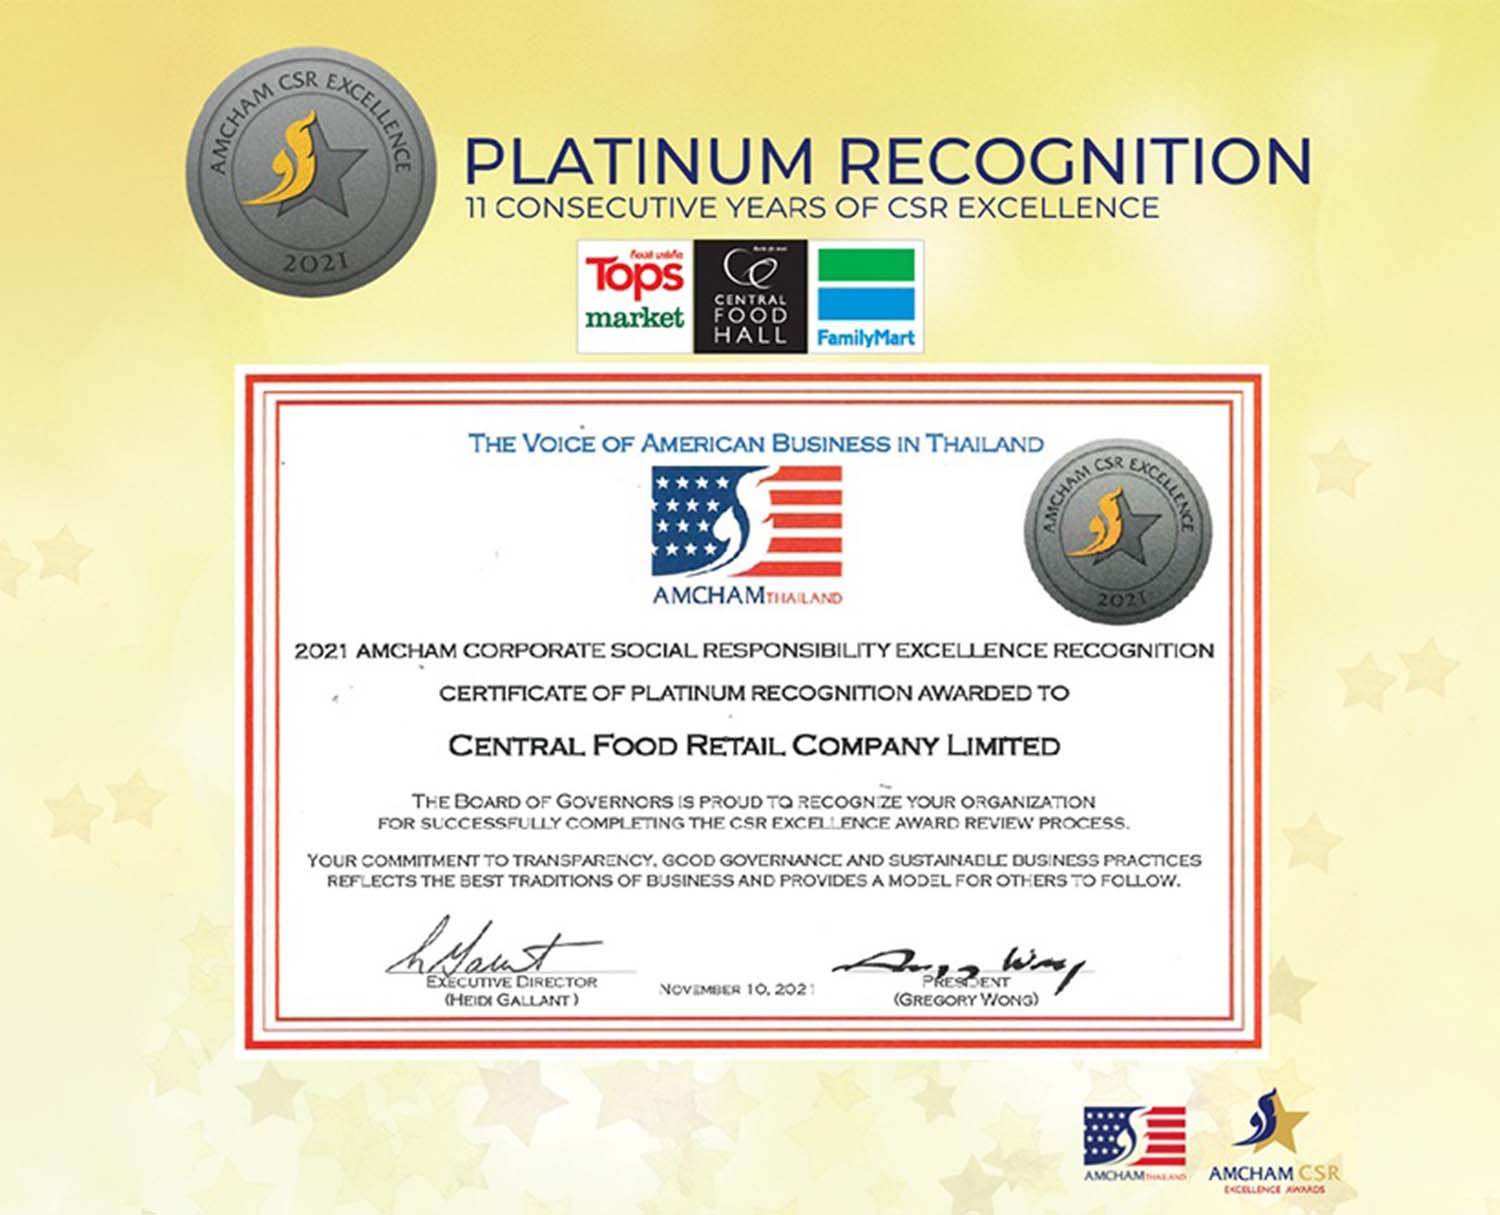 Amcham CSR Excellence Recognition - Platinum